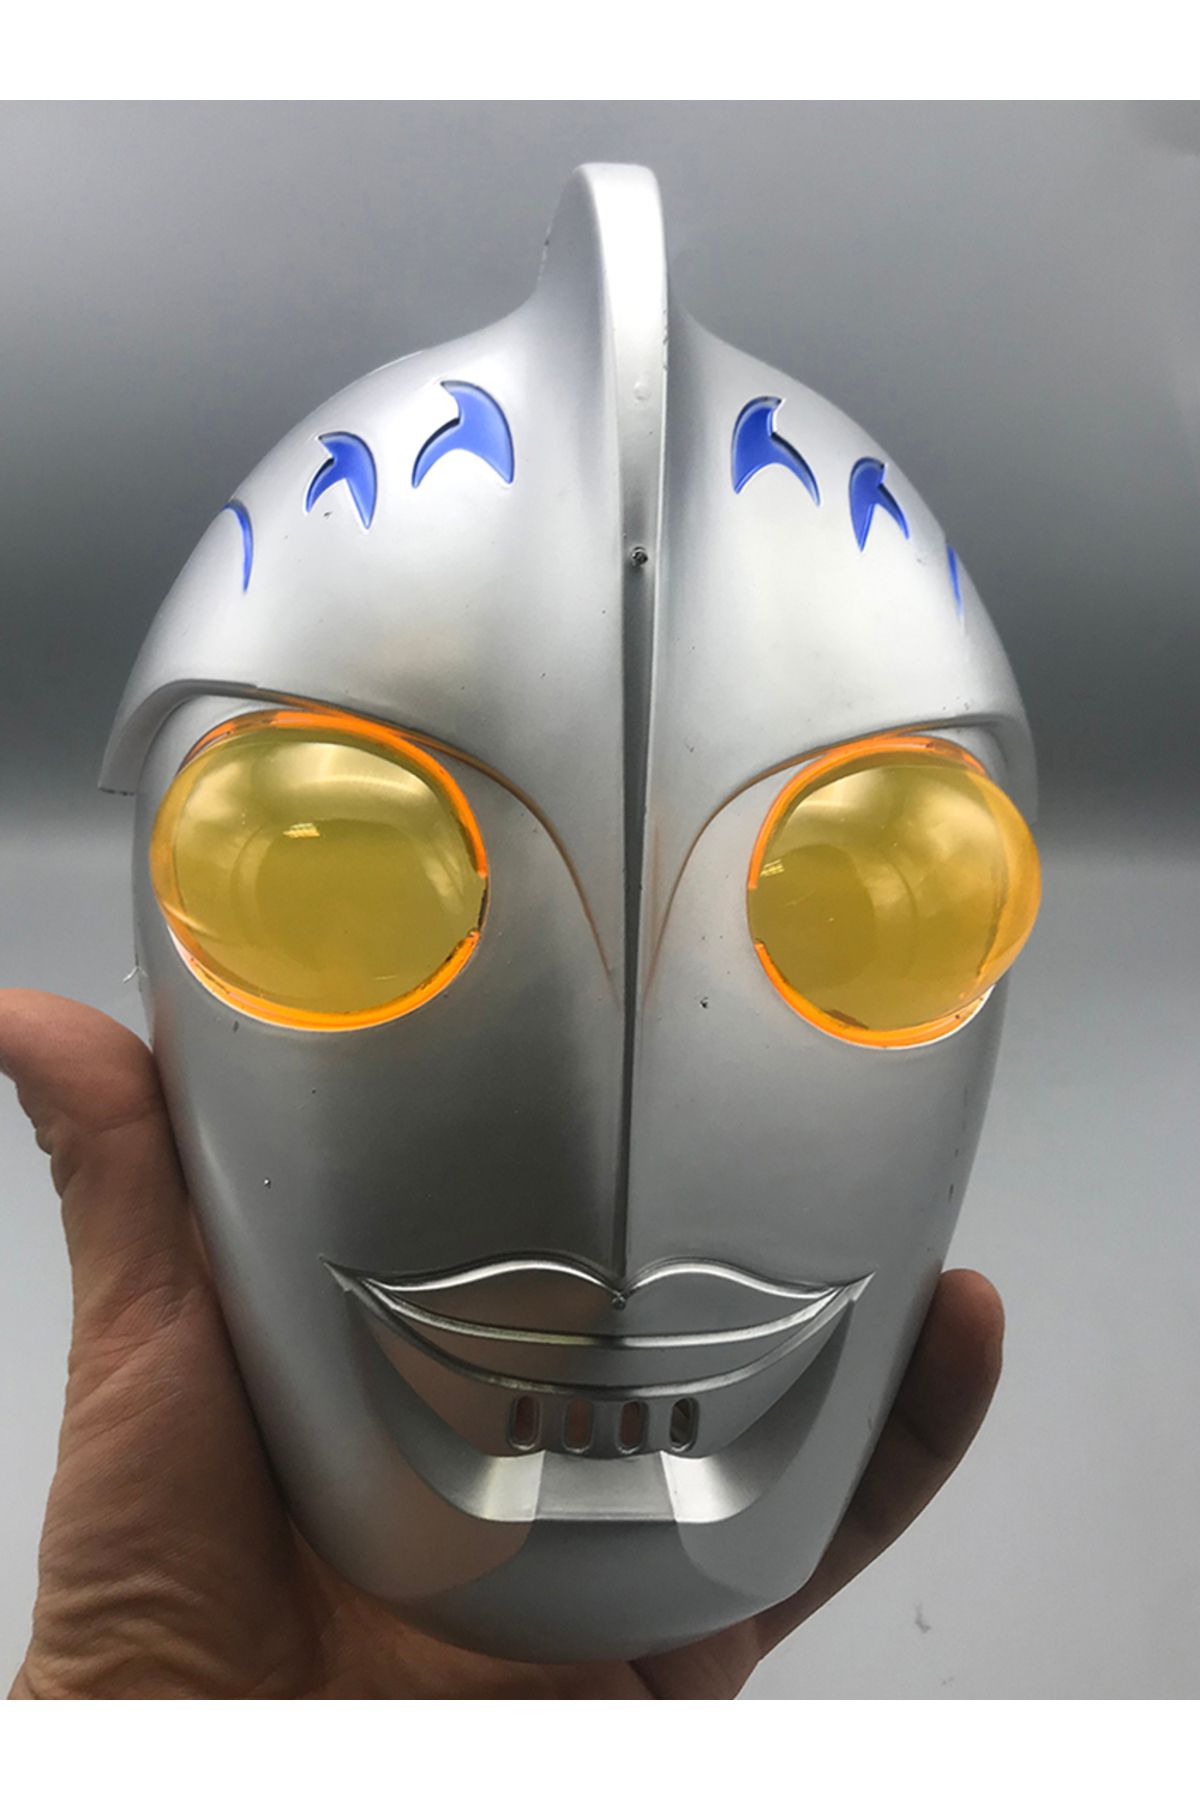 evimdeyokyok Cadılar Bayramı Pörtlek Göz Camlı Uzaylı Maskesi - Robot Maskesi 24x16 cm